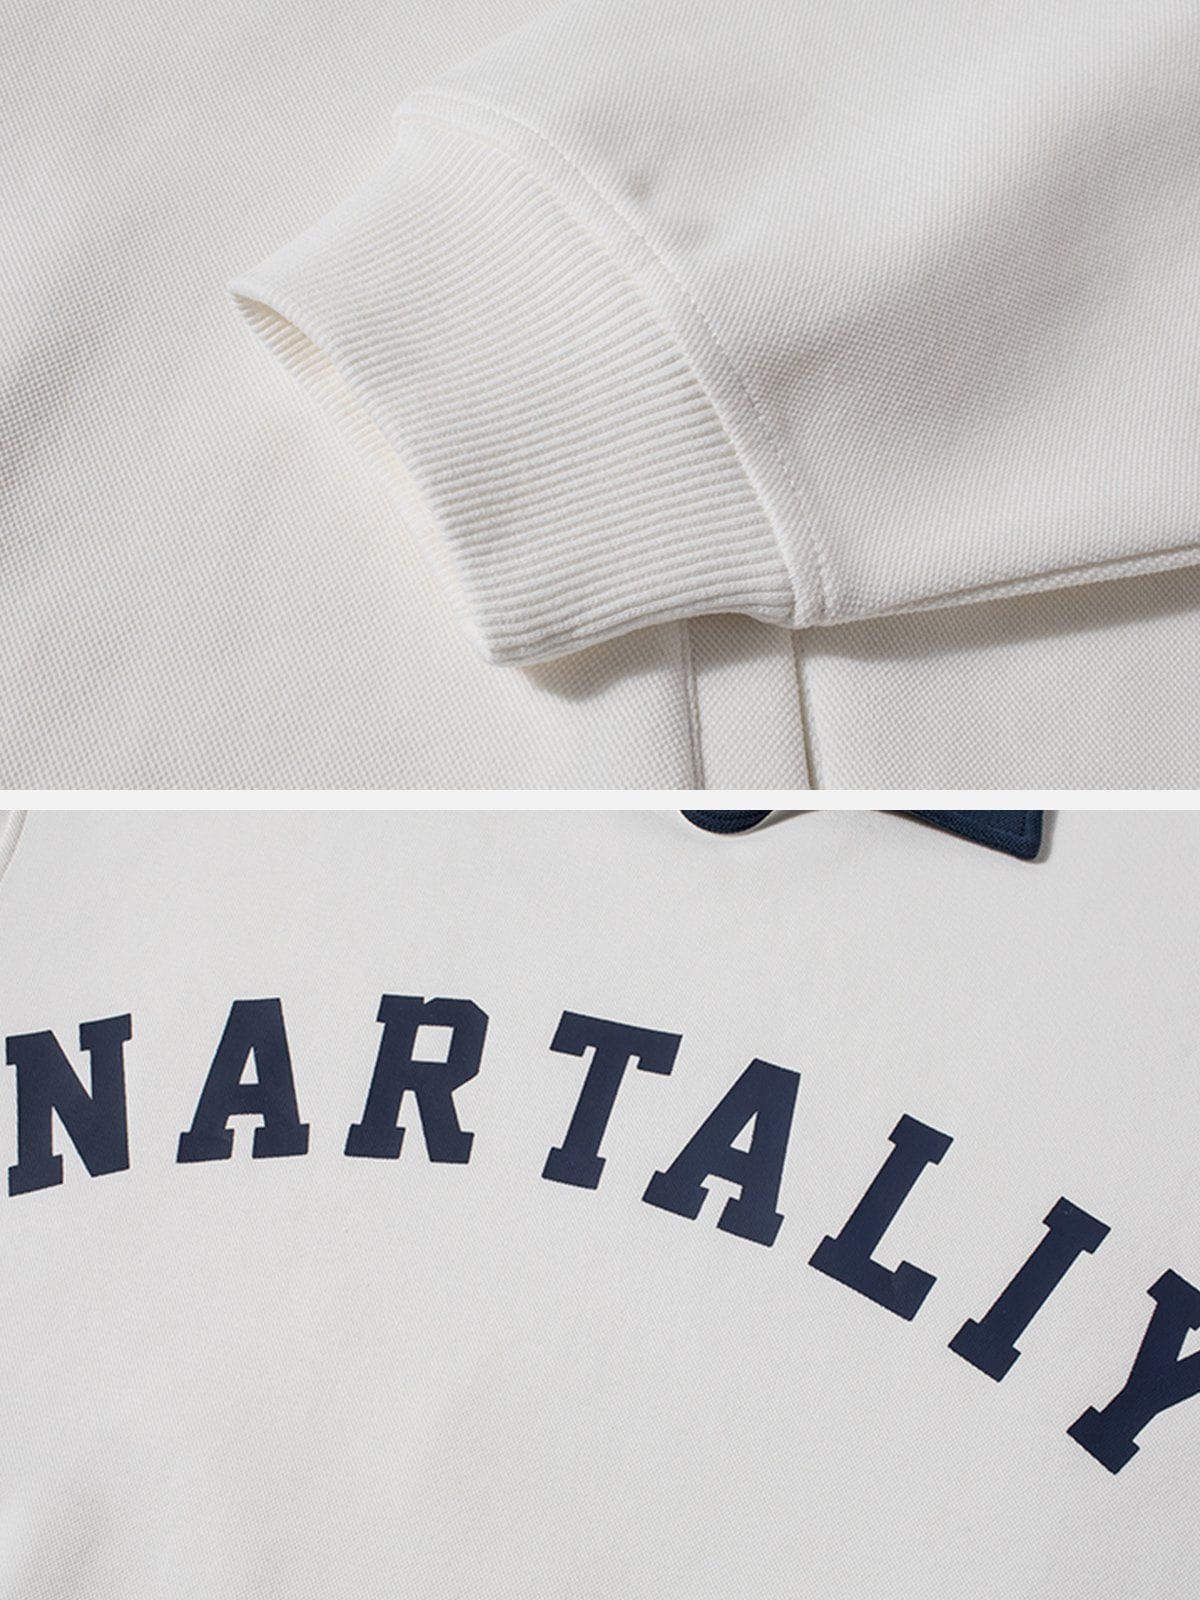 Eprezzy® - Nartaliy Embroidery Polo Sweatshirt Streetwear Fashion - eprezzy.com